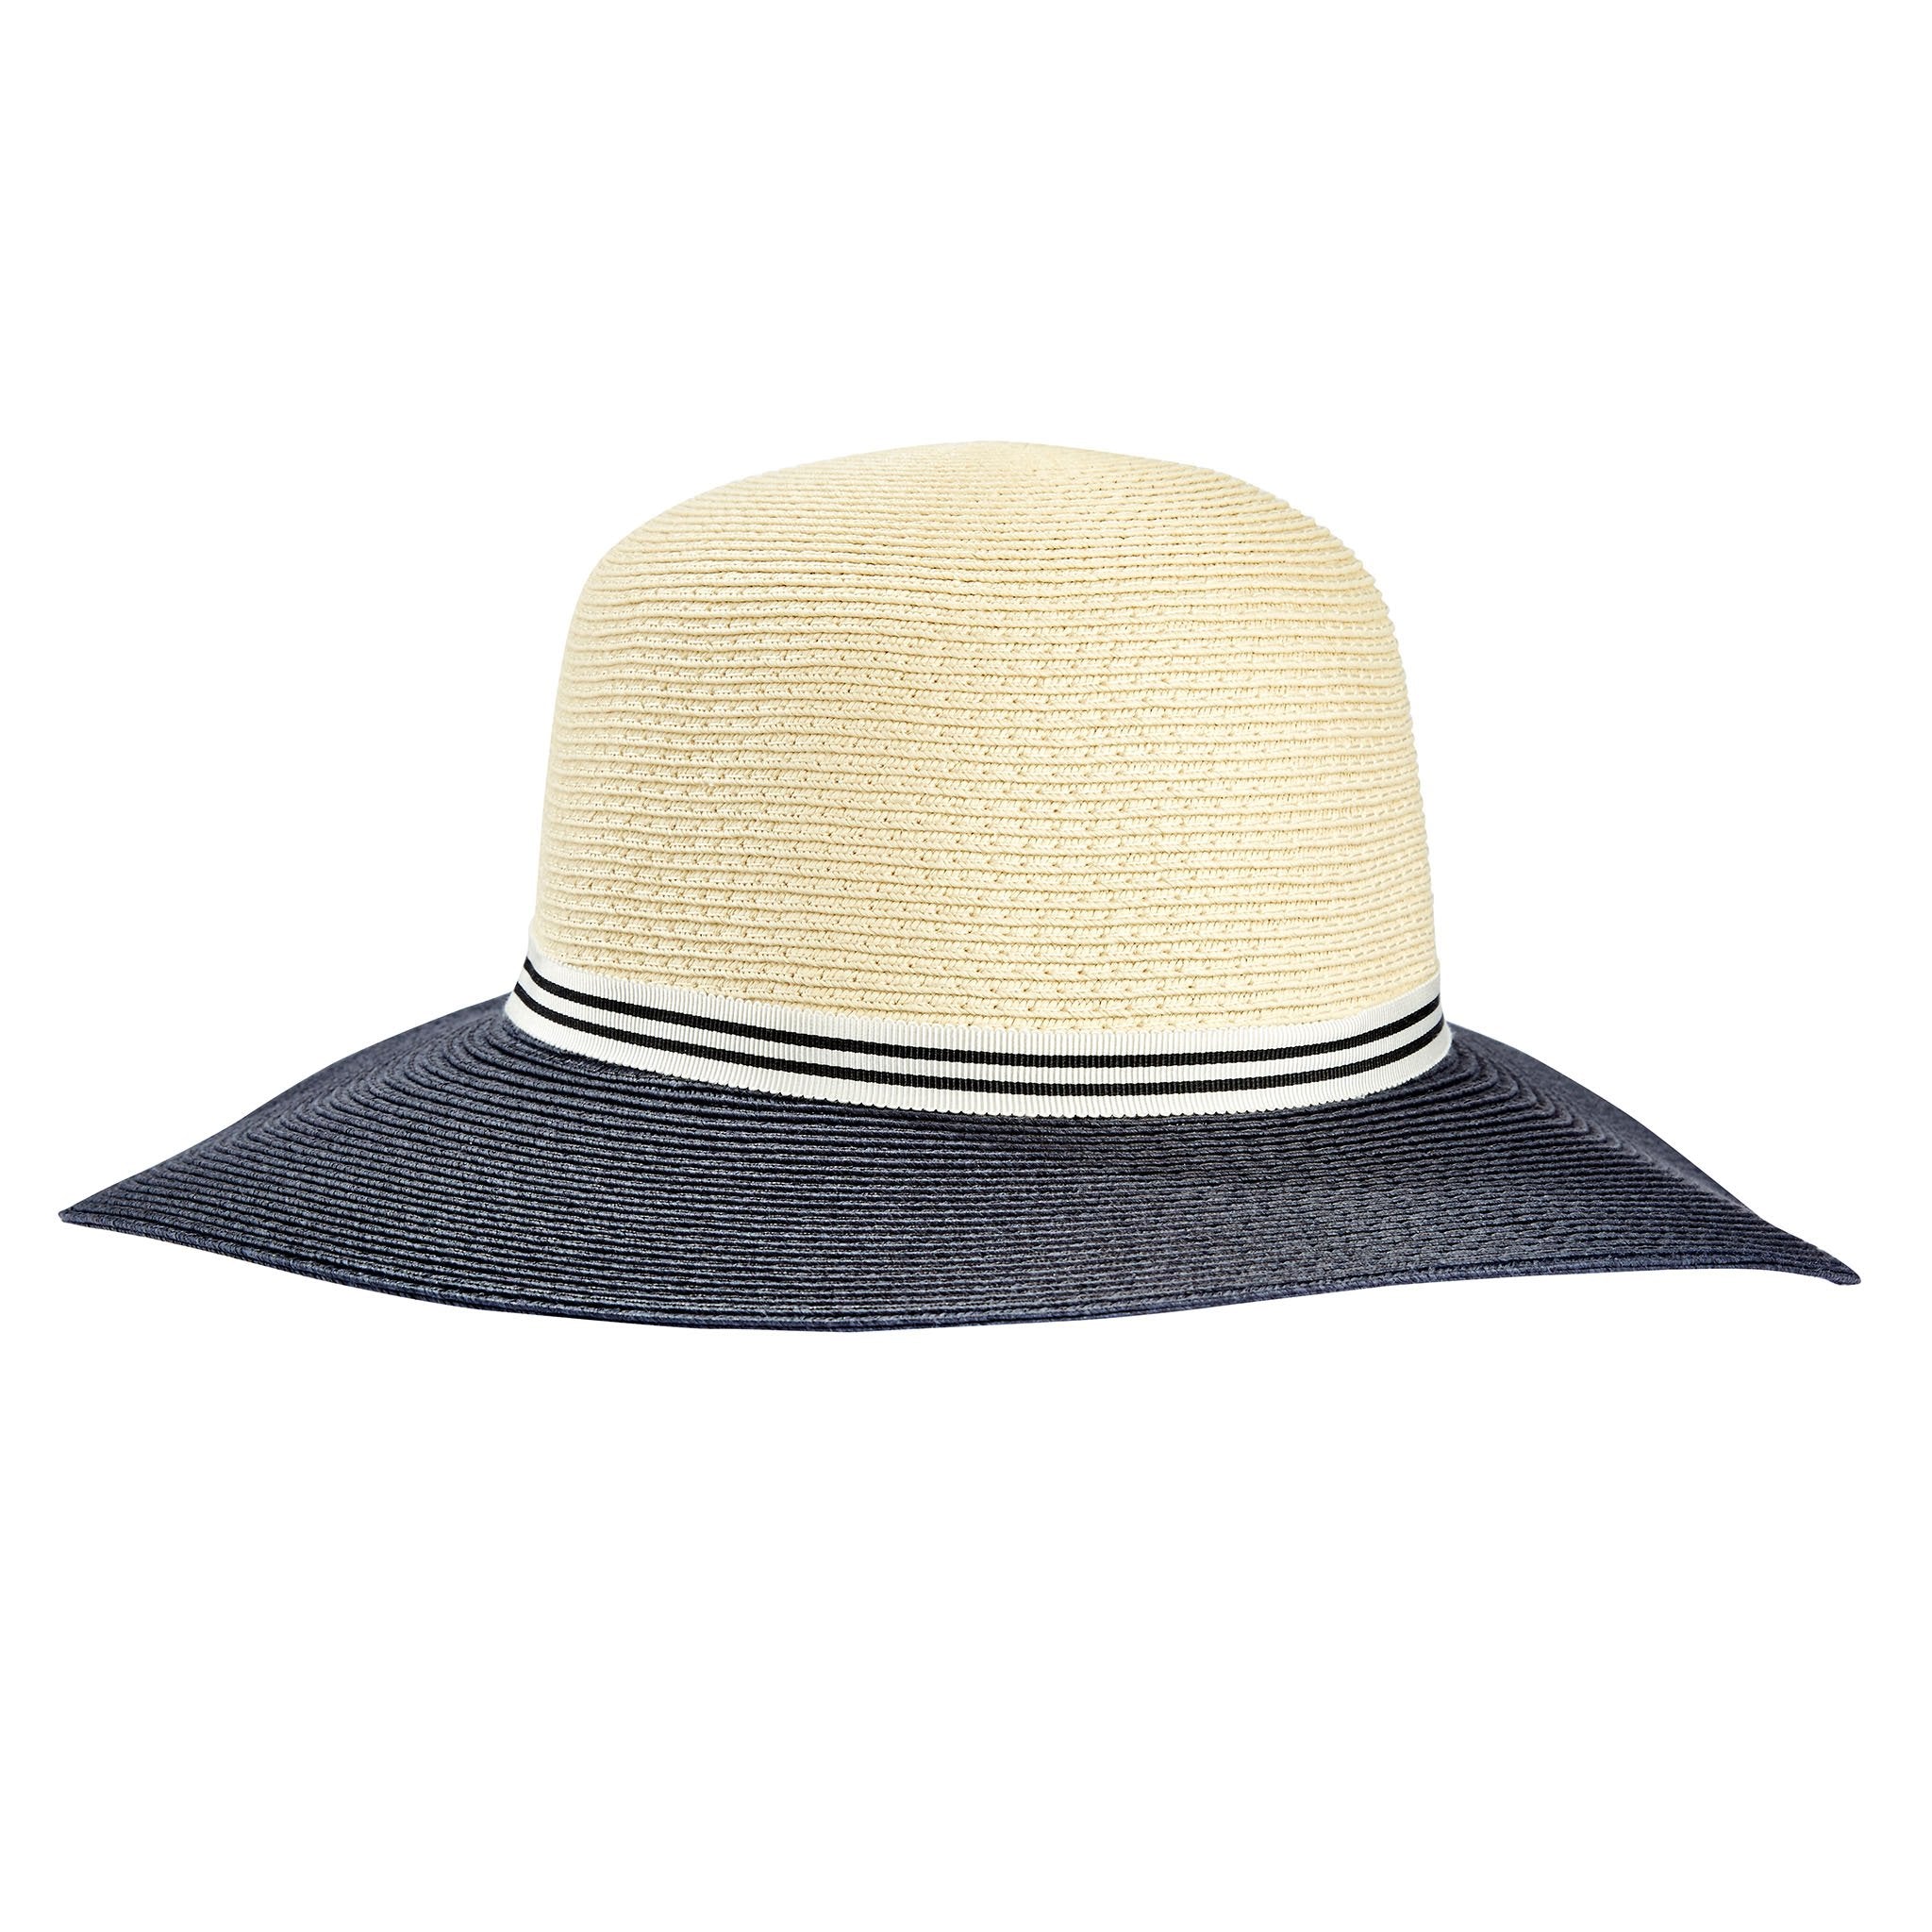 Tilley TOY1 Audrey Straw Sun Hat in Cream/Navy#colour_cream-navy